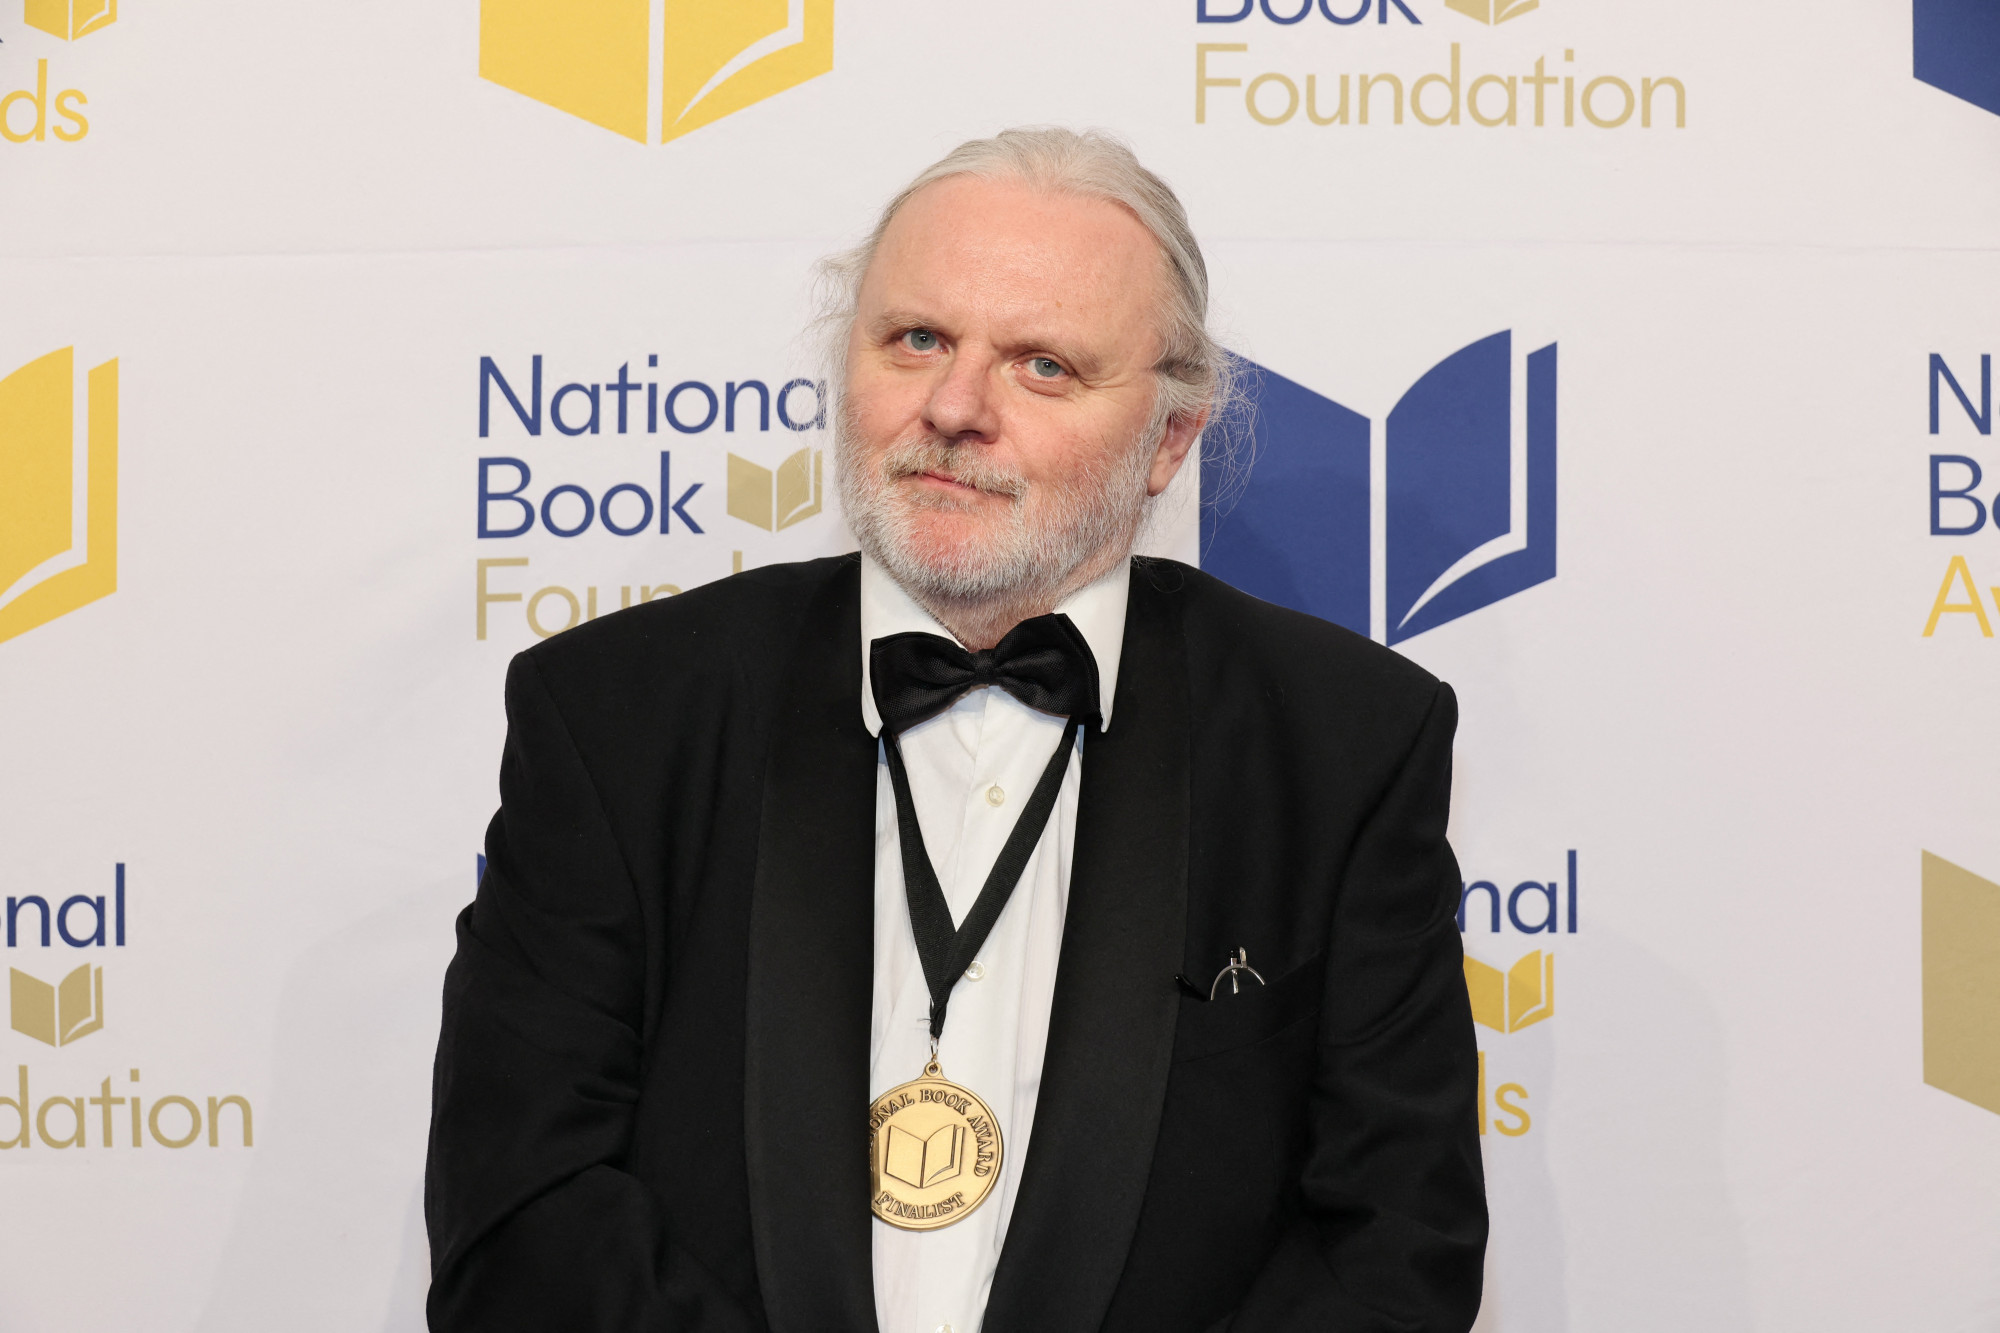 Jon Fosse kapta az irodalmi Nobel-díjat